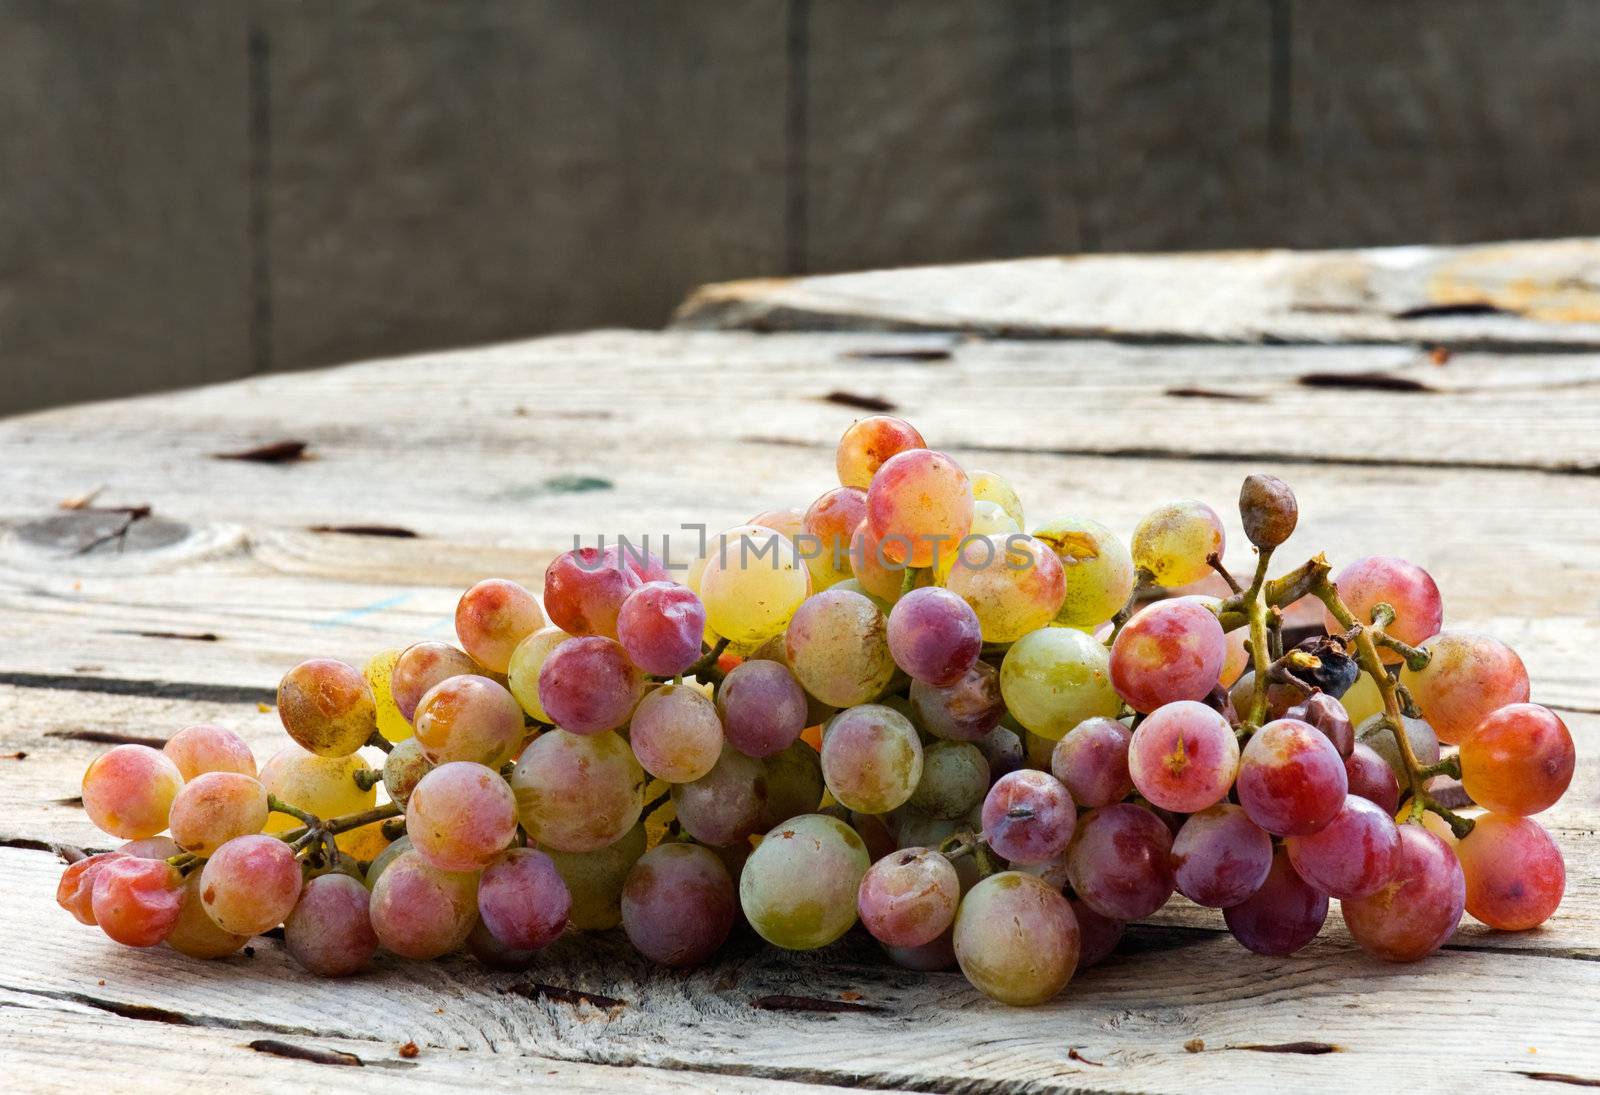 Grapes by akarelias